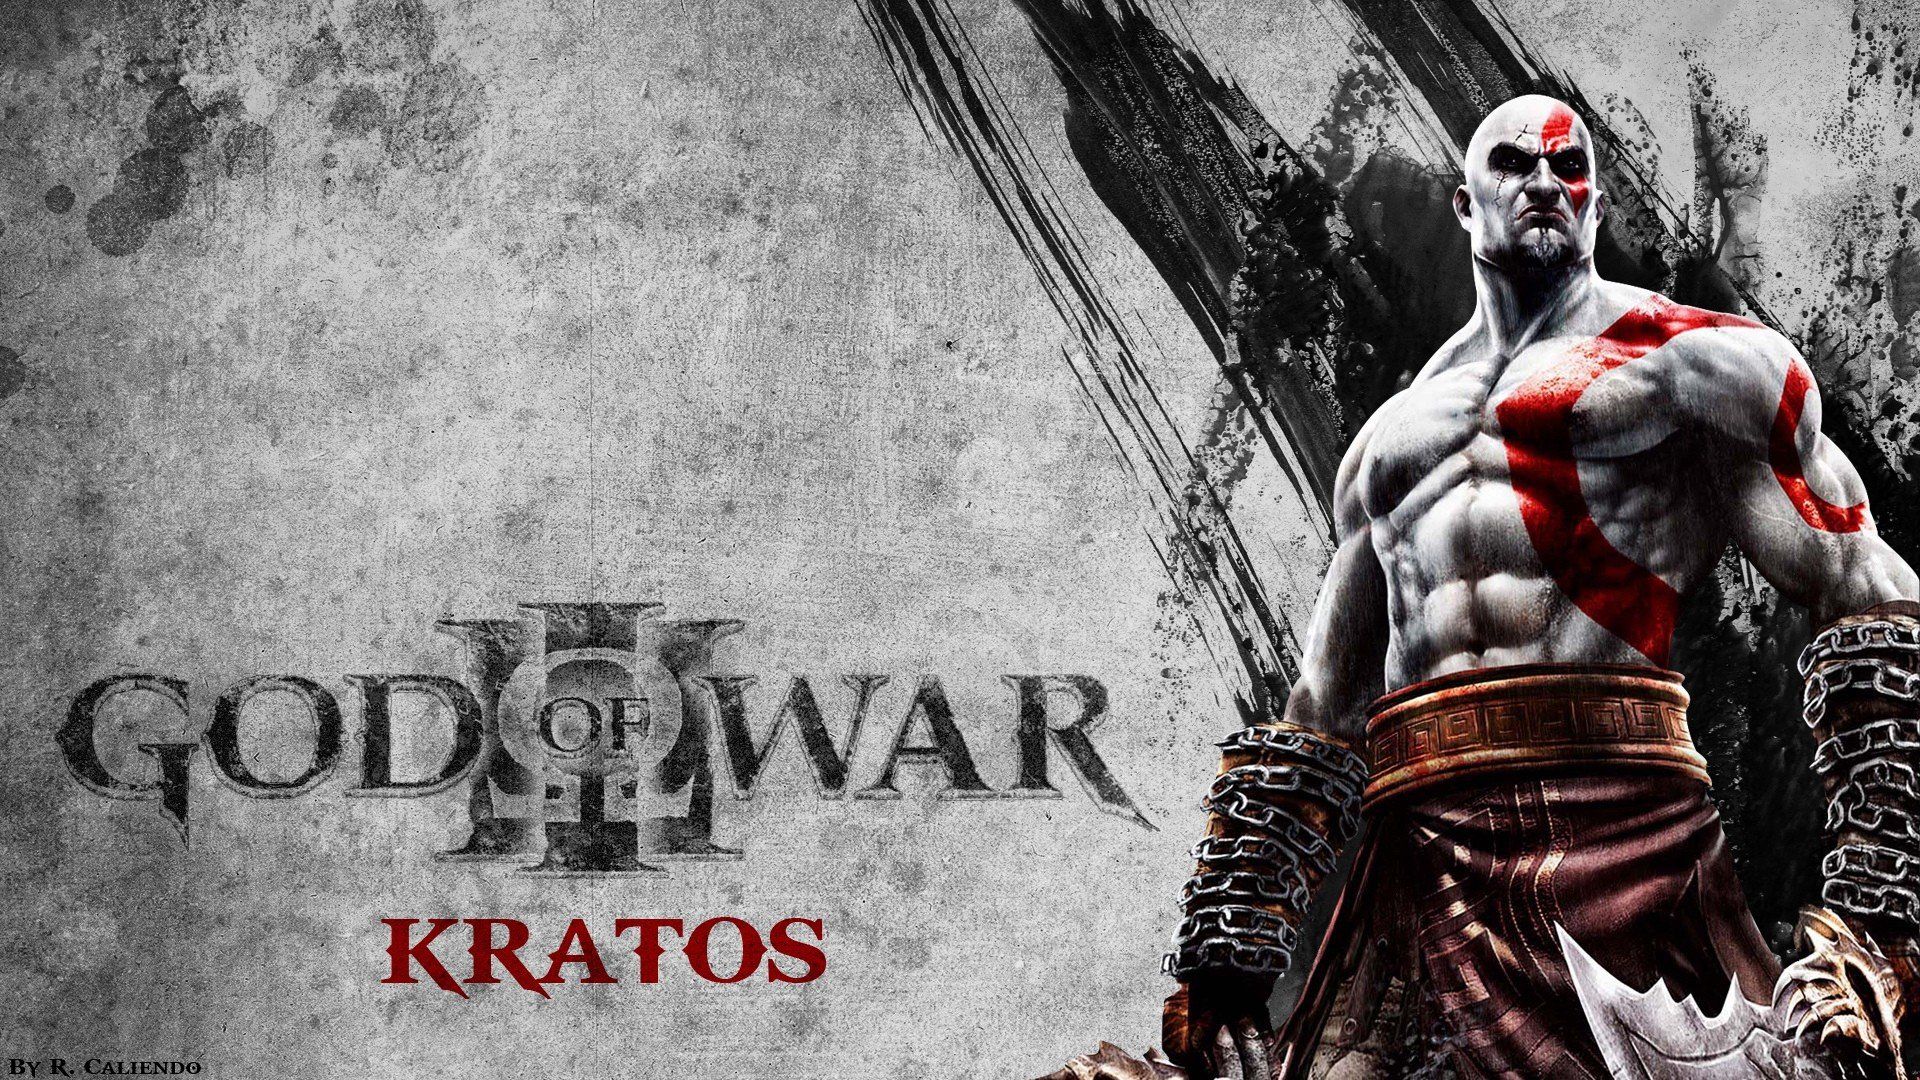 Kratos God of War pc games wallpaper | 1920x1080 | 262535 ...